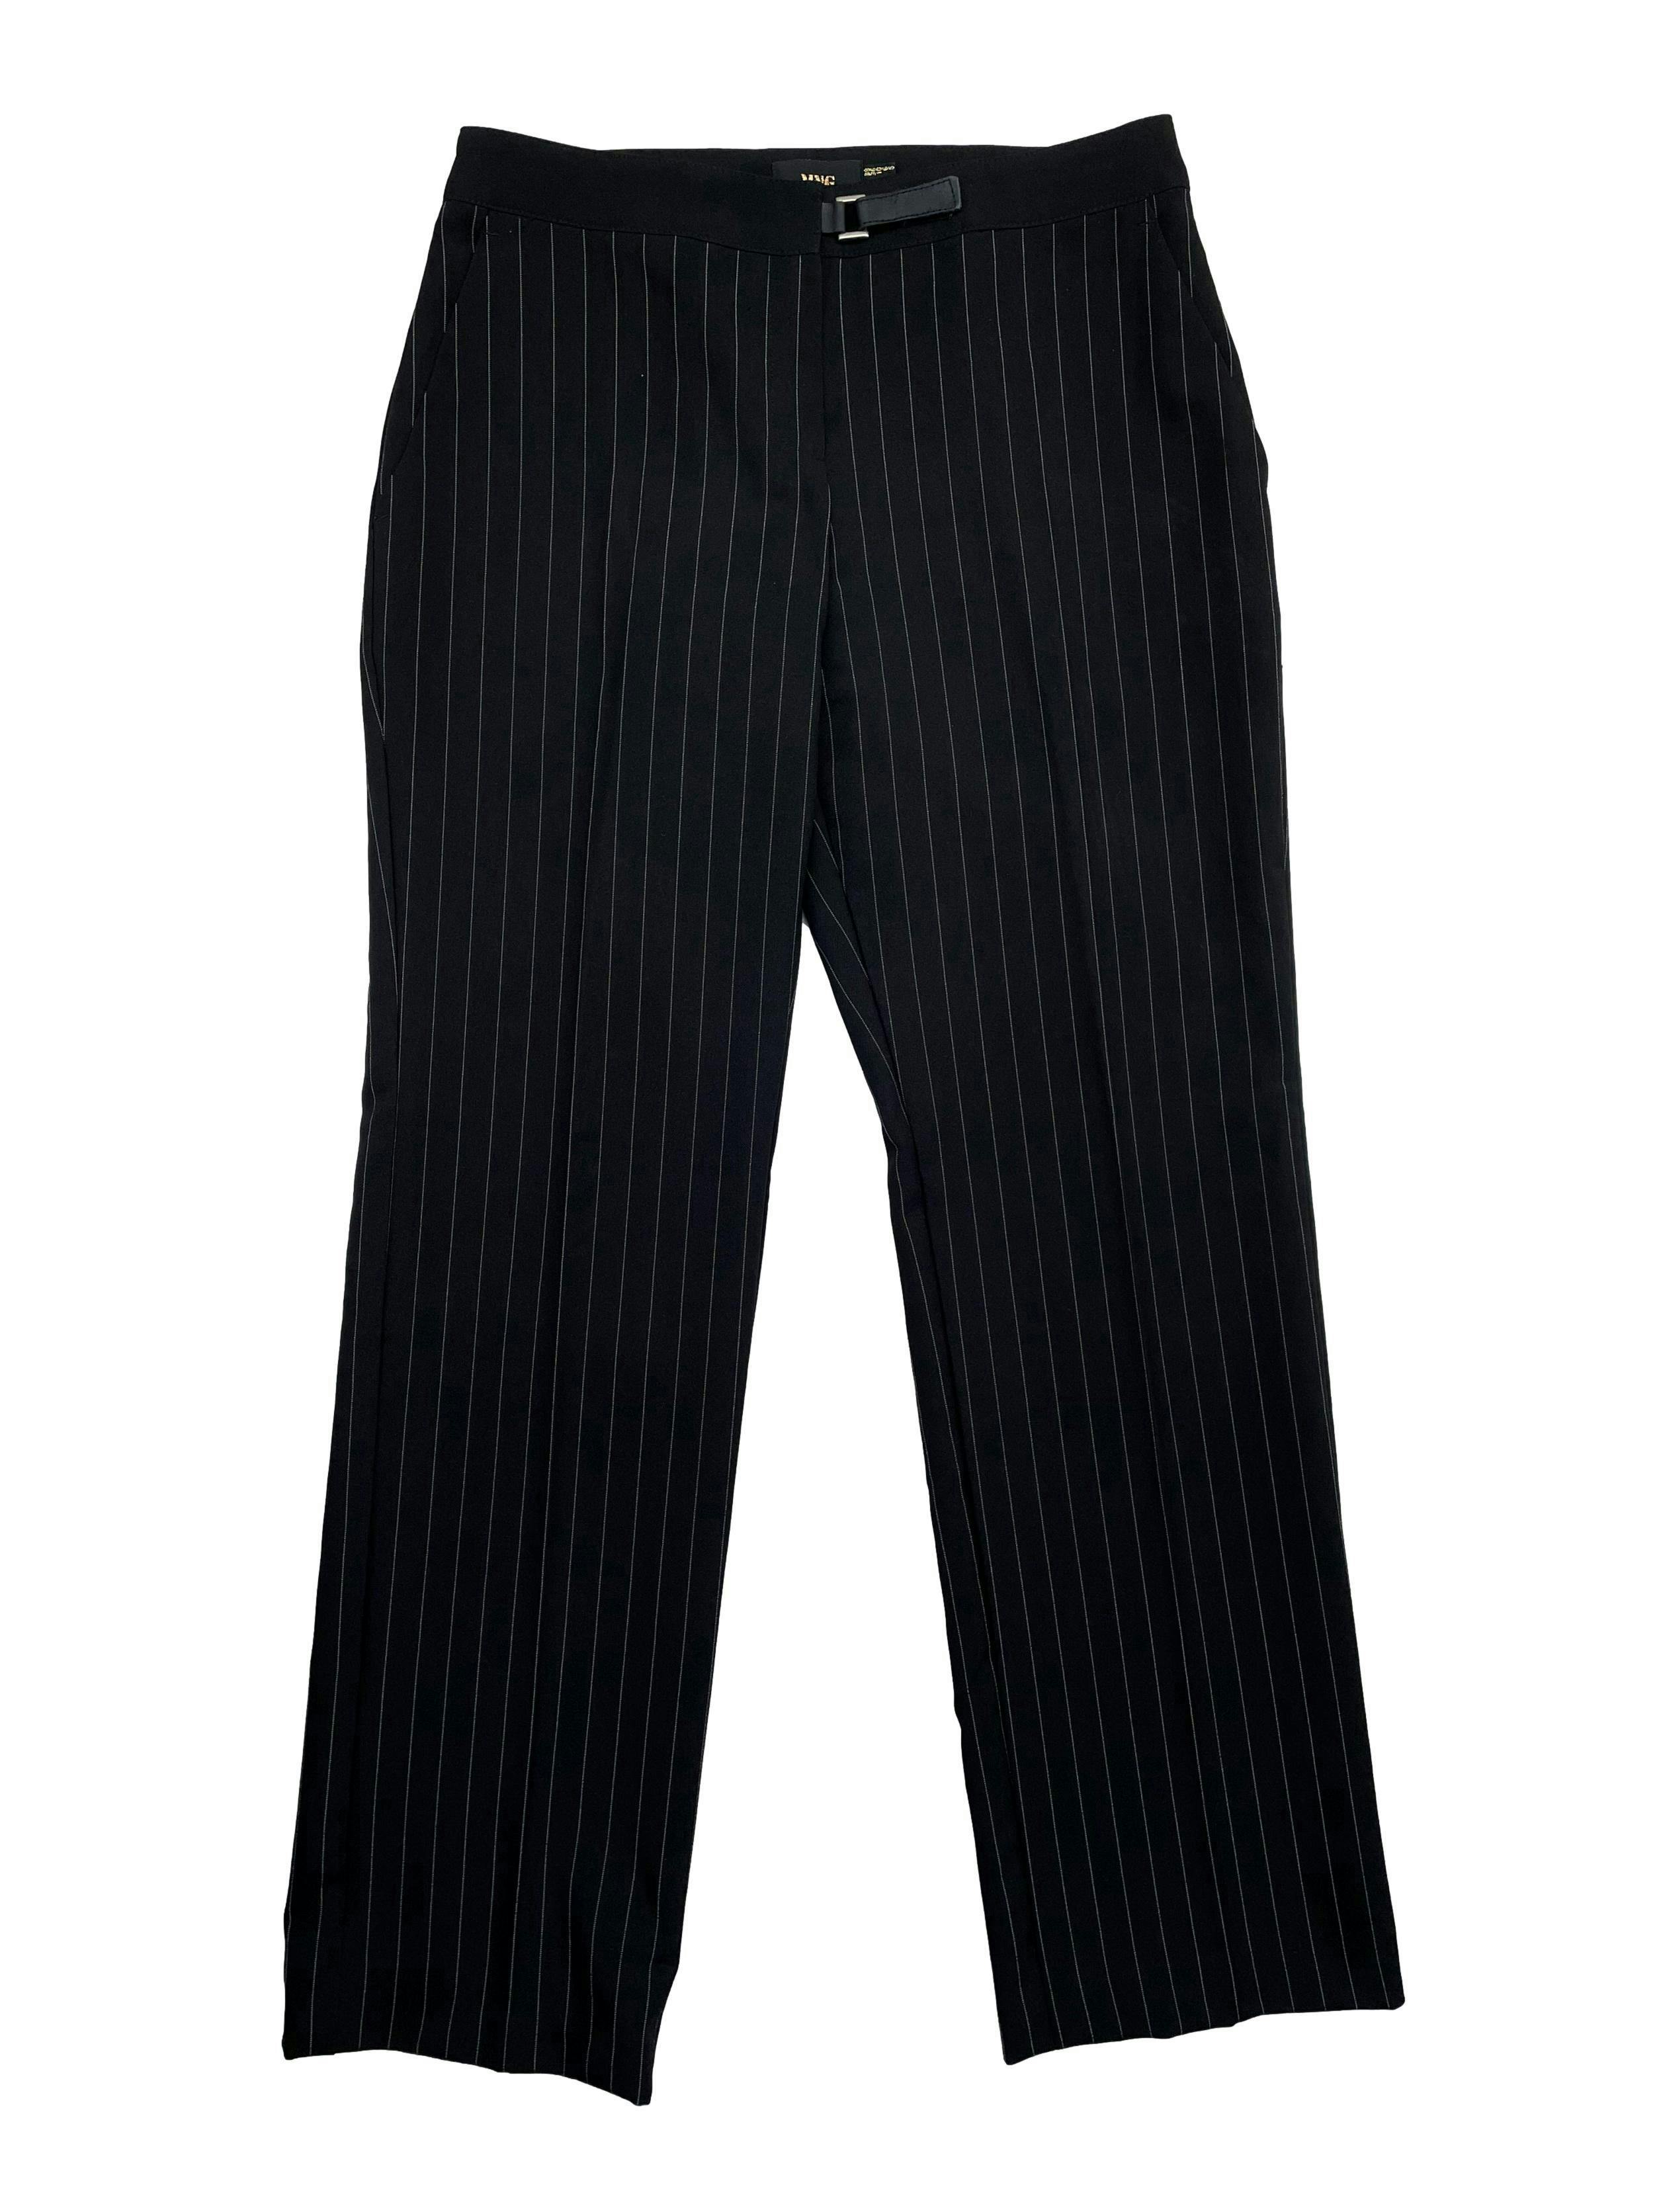 Pantalón de vestir Mango con rayas diplomáticas, corte recto, bolsillos laterales y cierre escondido frontal. Cintura 76cm, Largo 97cm.